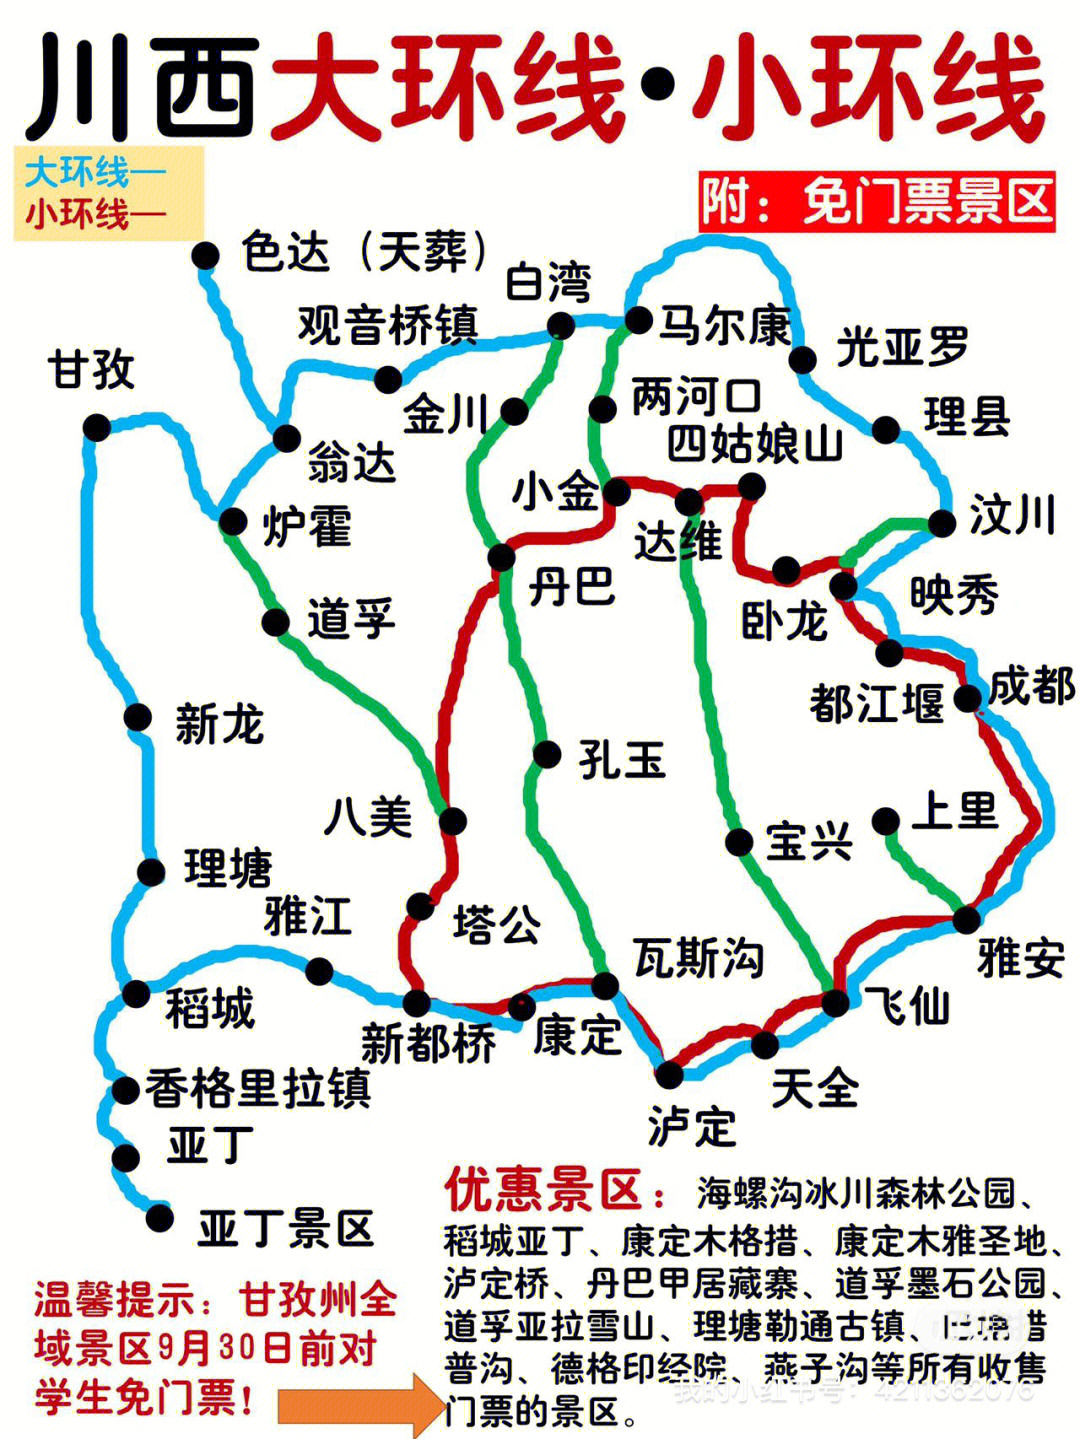 四川旅游景点分布地图图片